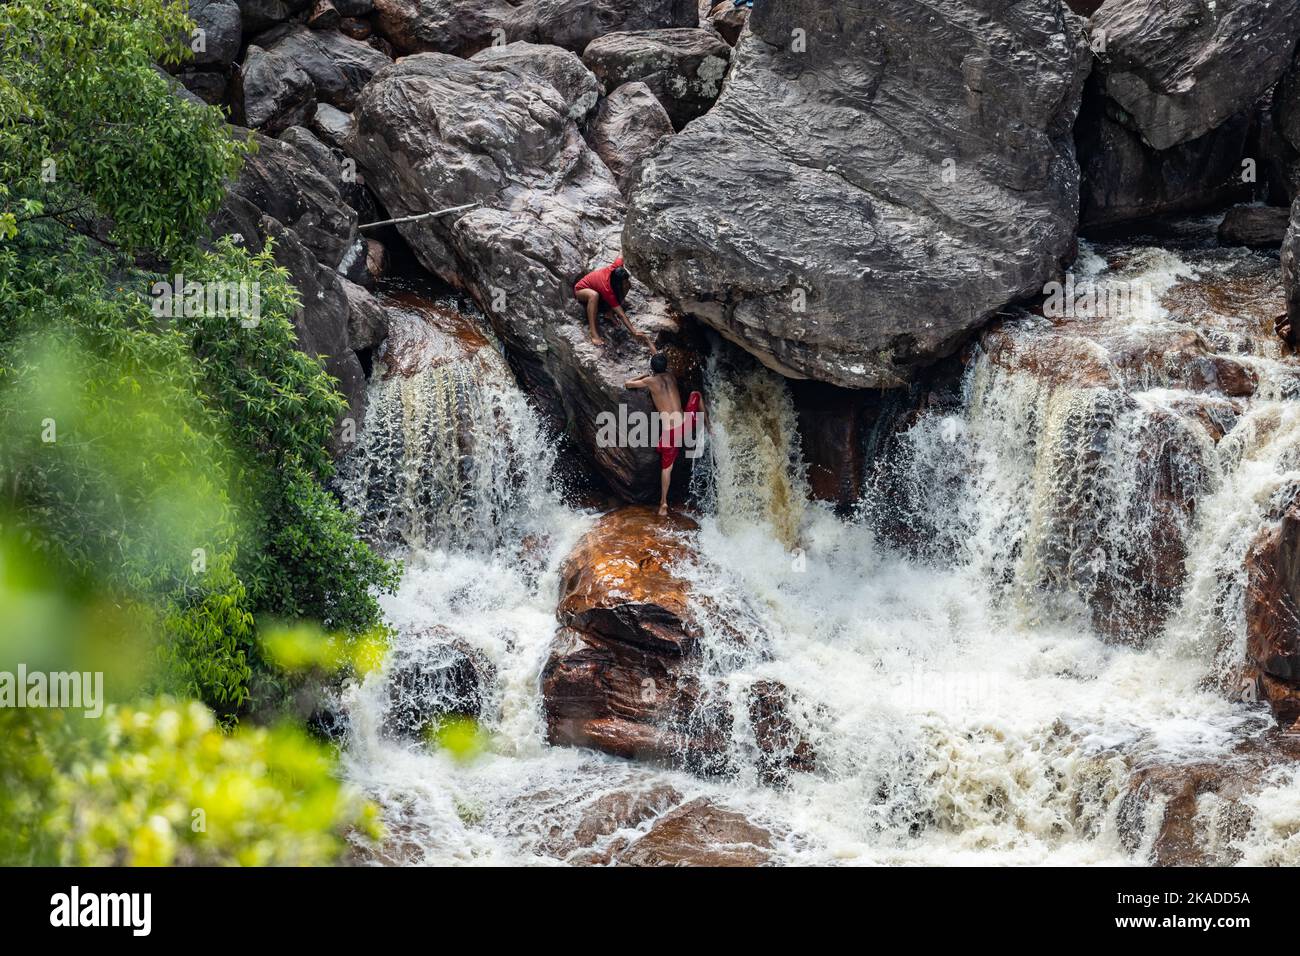 Ein junger Mann, der versucht, einen Felsen im Wasserfall am Fuße des Berges Tepui zu erklimmen. Tepequém, Bundesstaat Roraima, Brasilien. Stockfoto